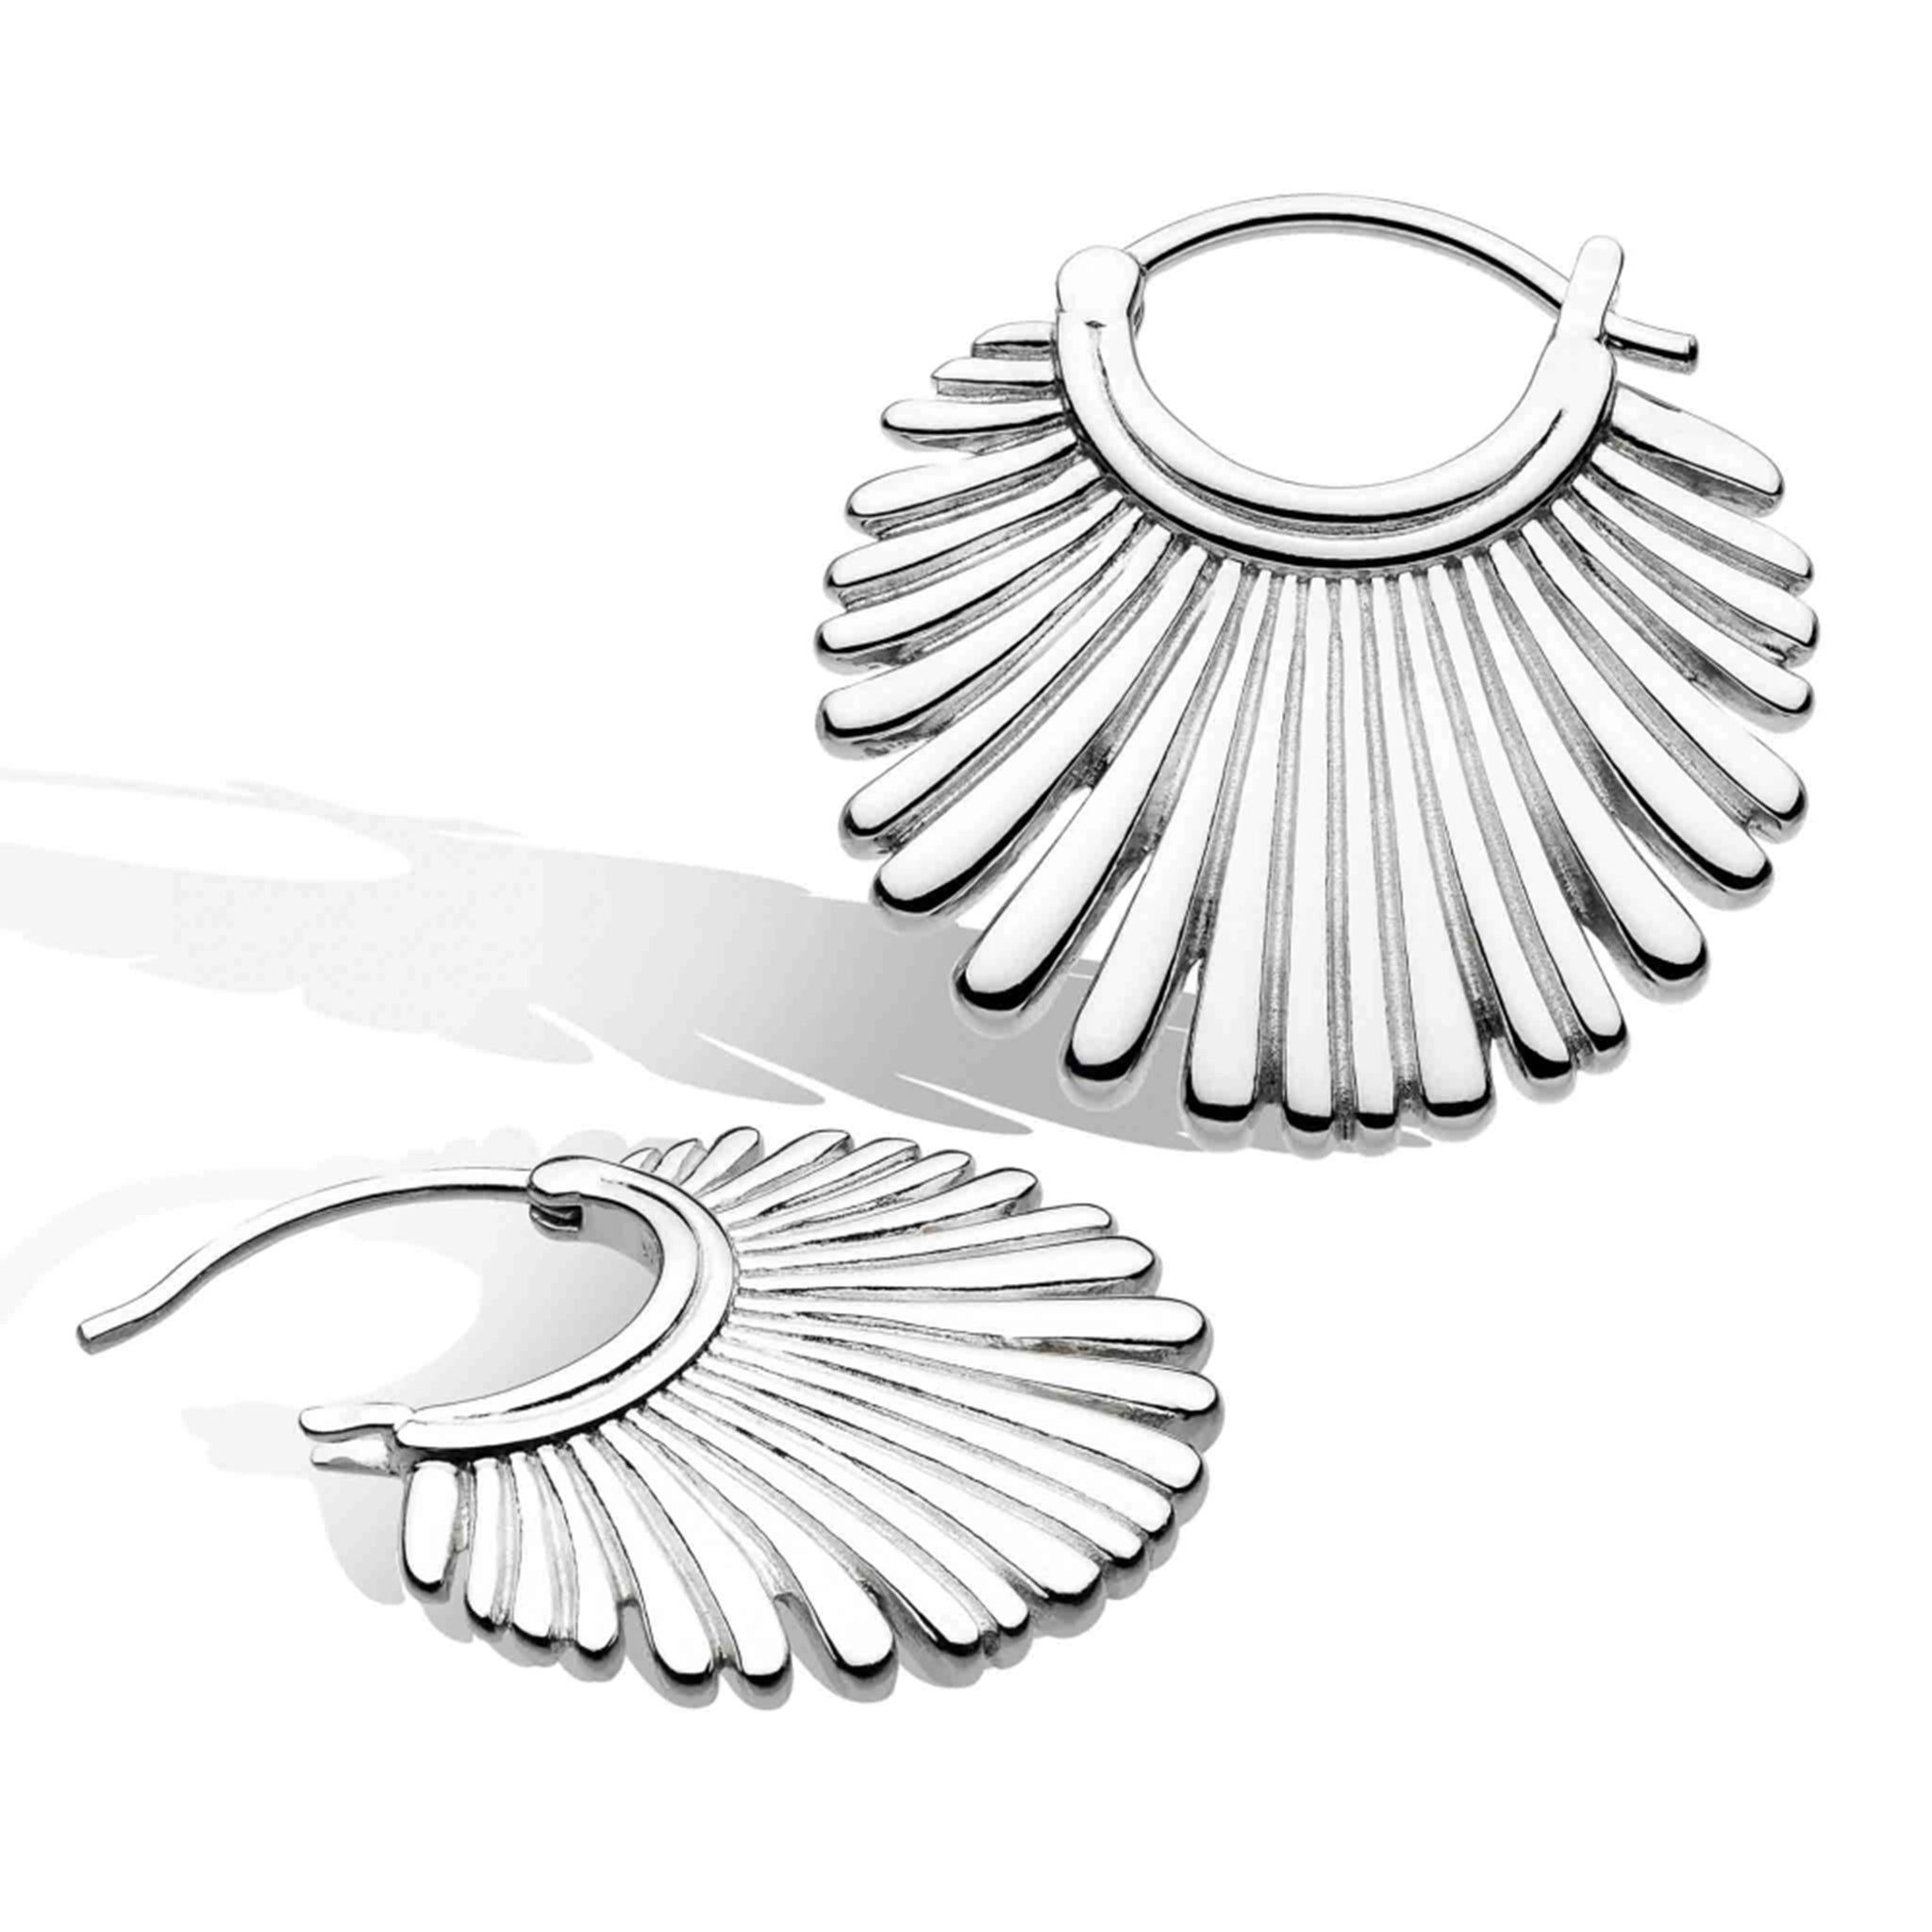 A silver pair of round fan shaped hoop earrings